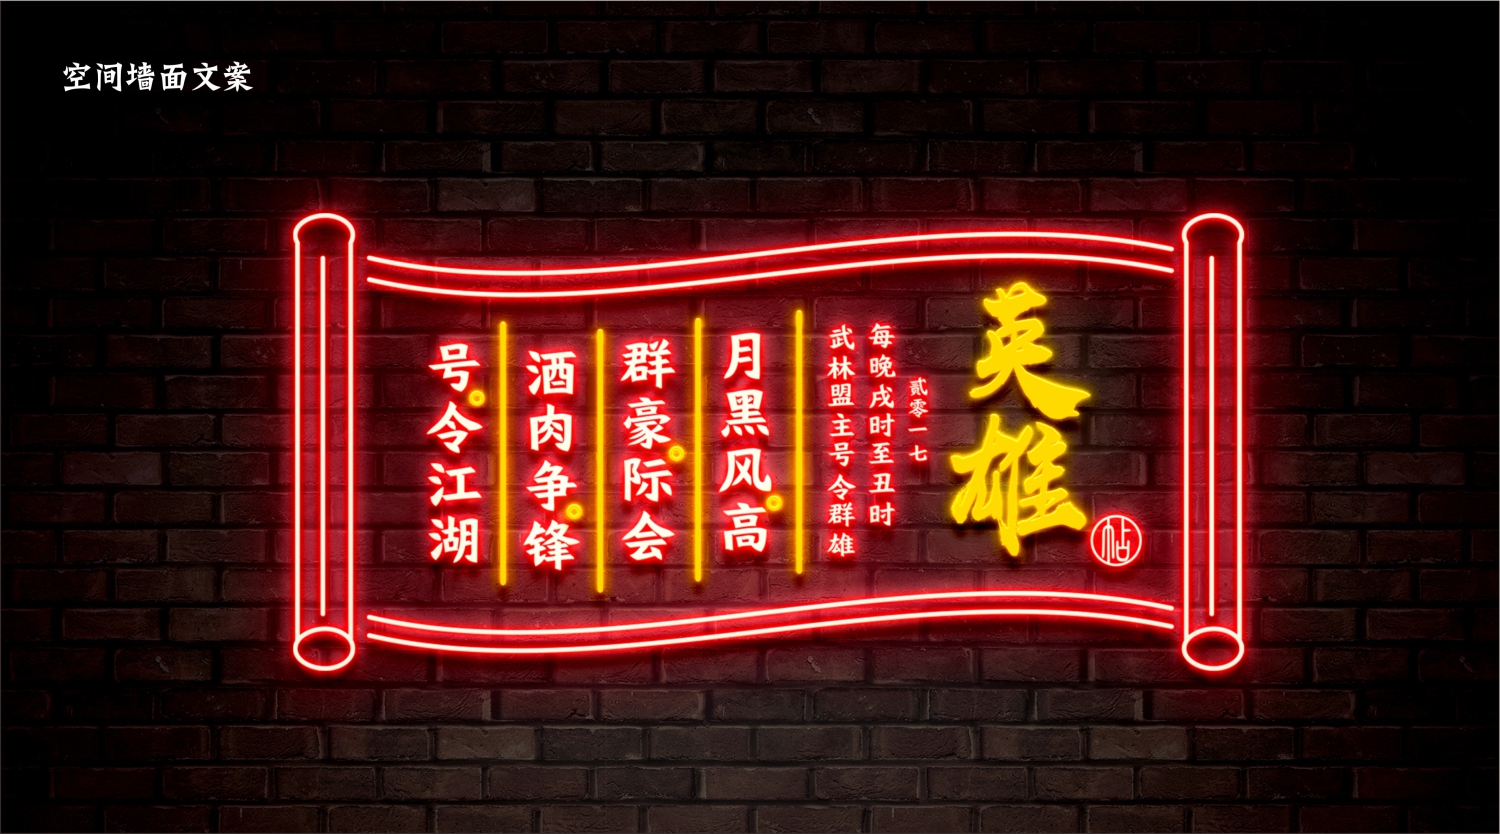 东莞宵夜连锁餐饮品牌灯火阑珊空间墙面文案创作